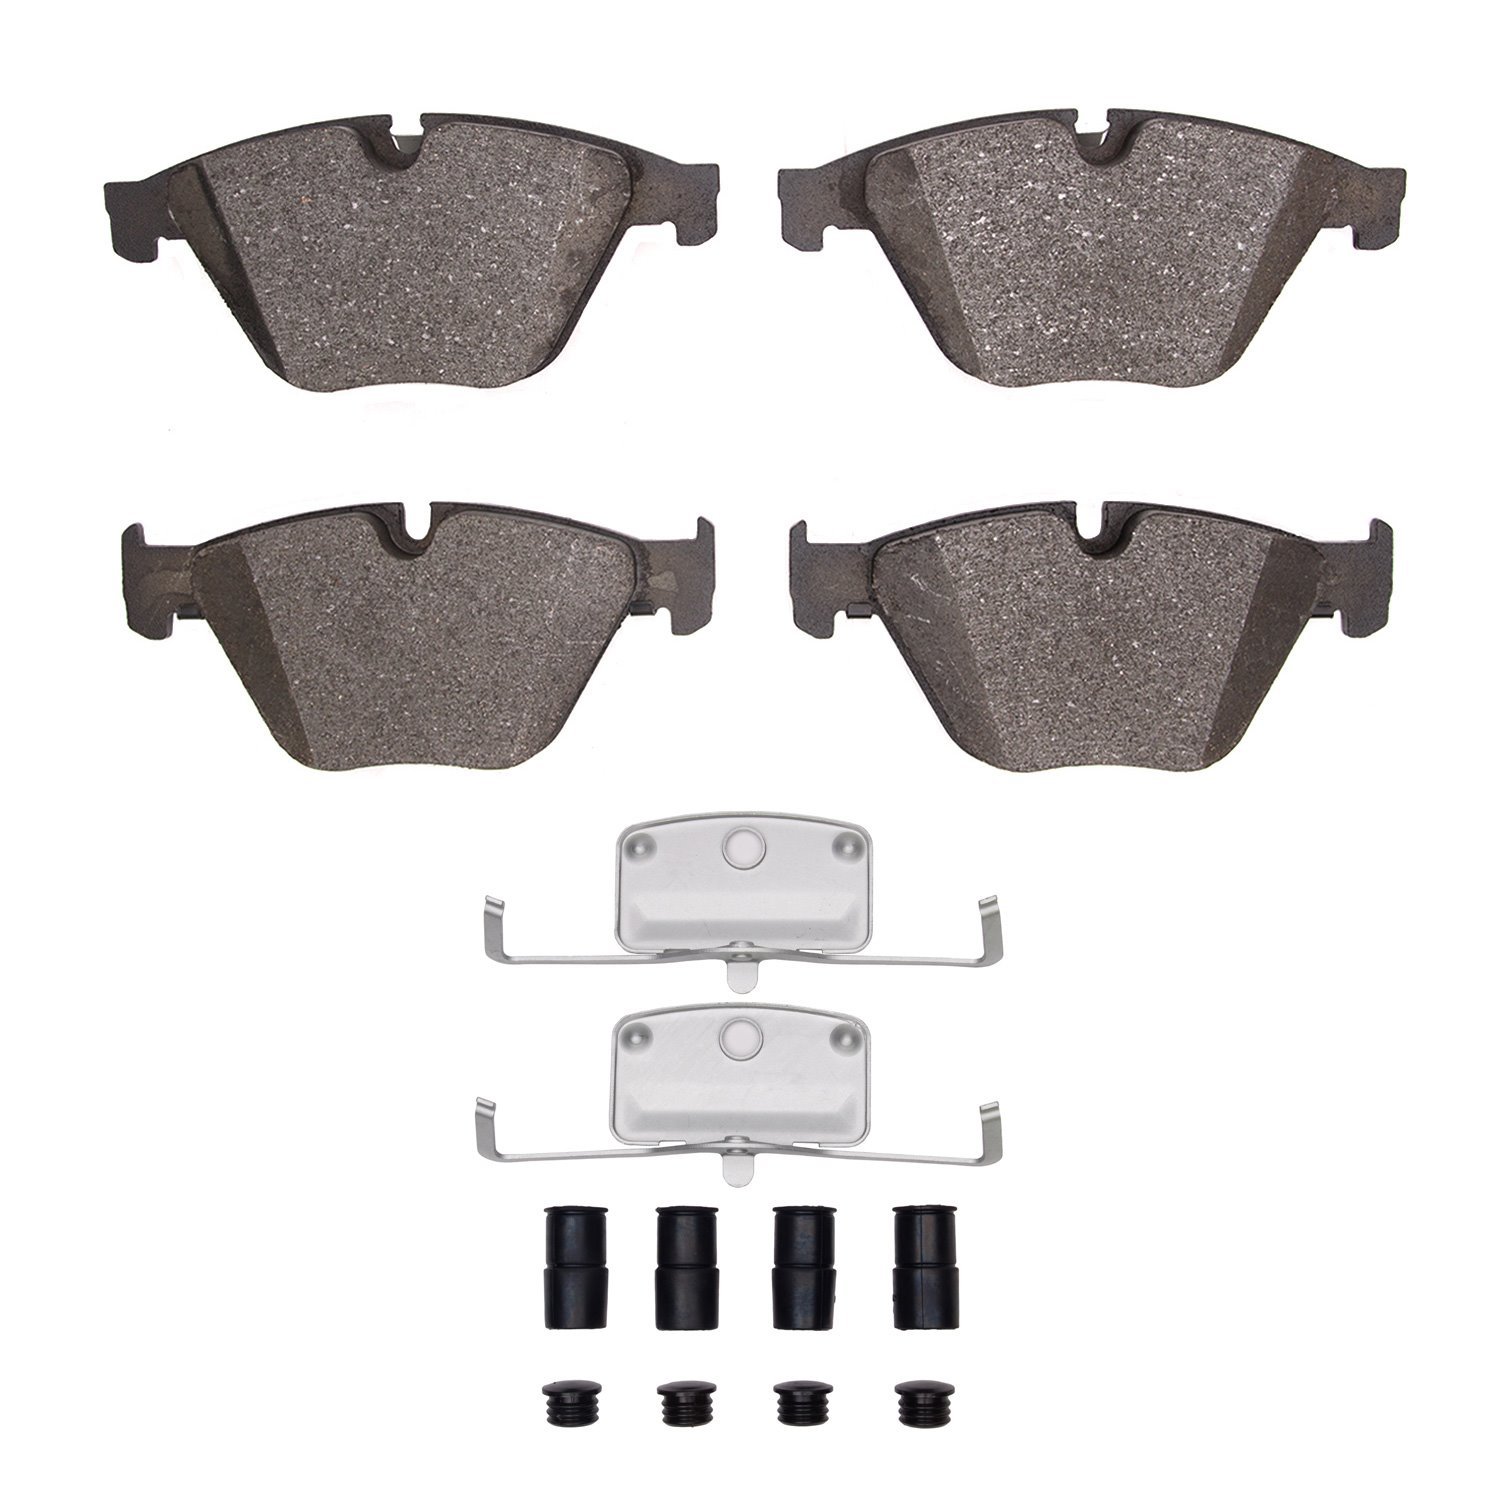 1551-1505-01 5000 Advanced Low-Metallic Brake Pads & Hardware Kit, 2011-2018 BMW, Position: Front